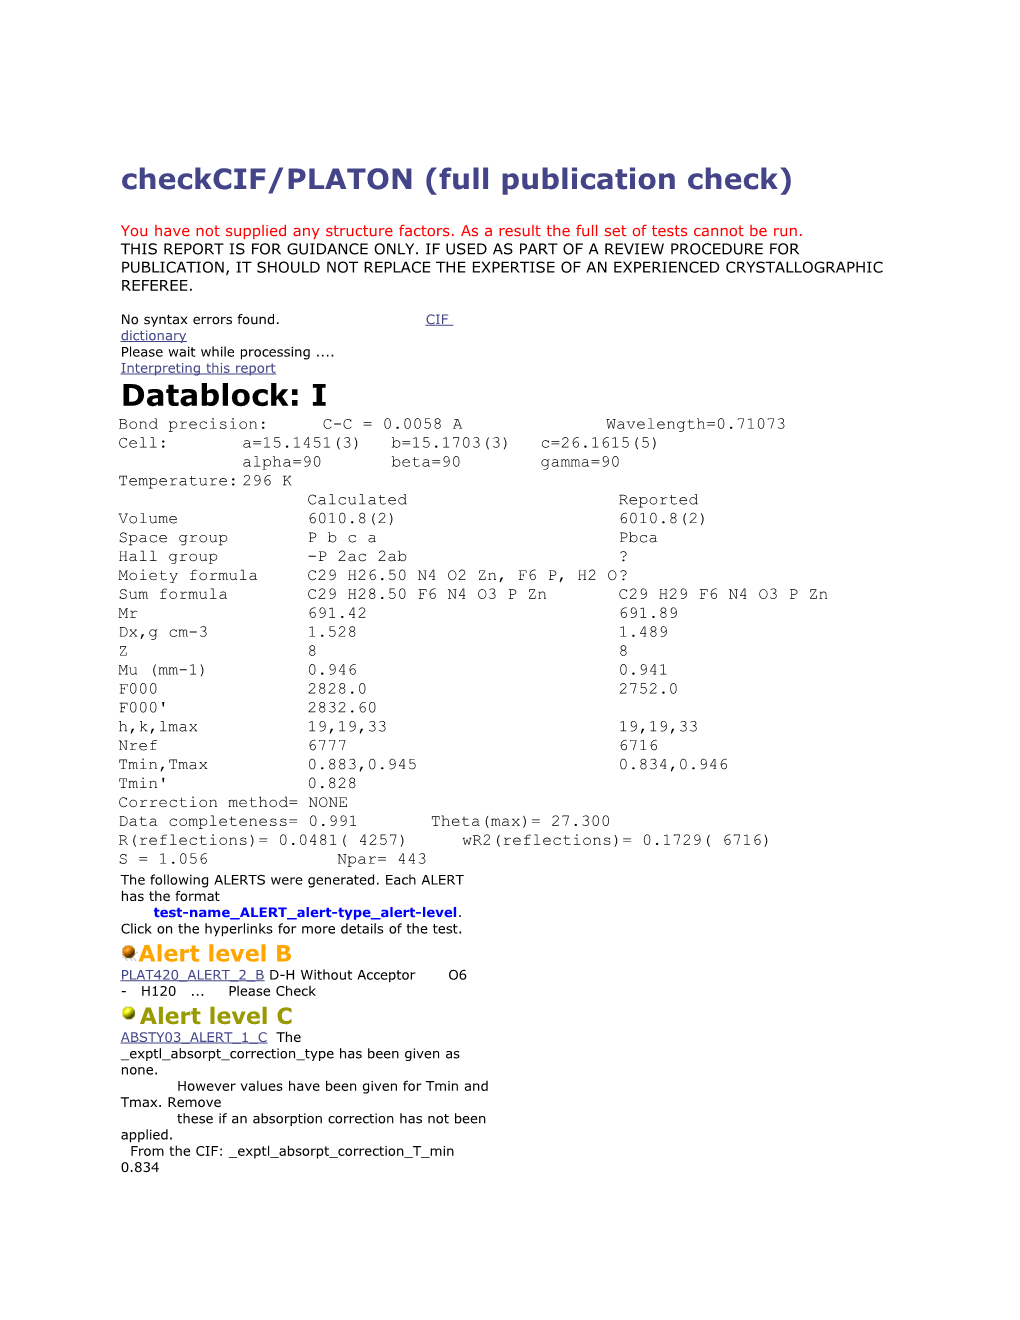 Checkcif/PLATON (Full Publication Check)